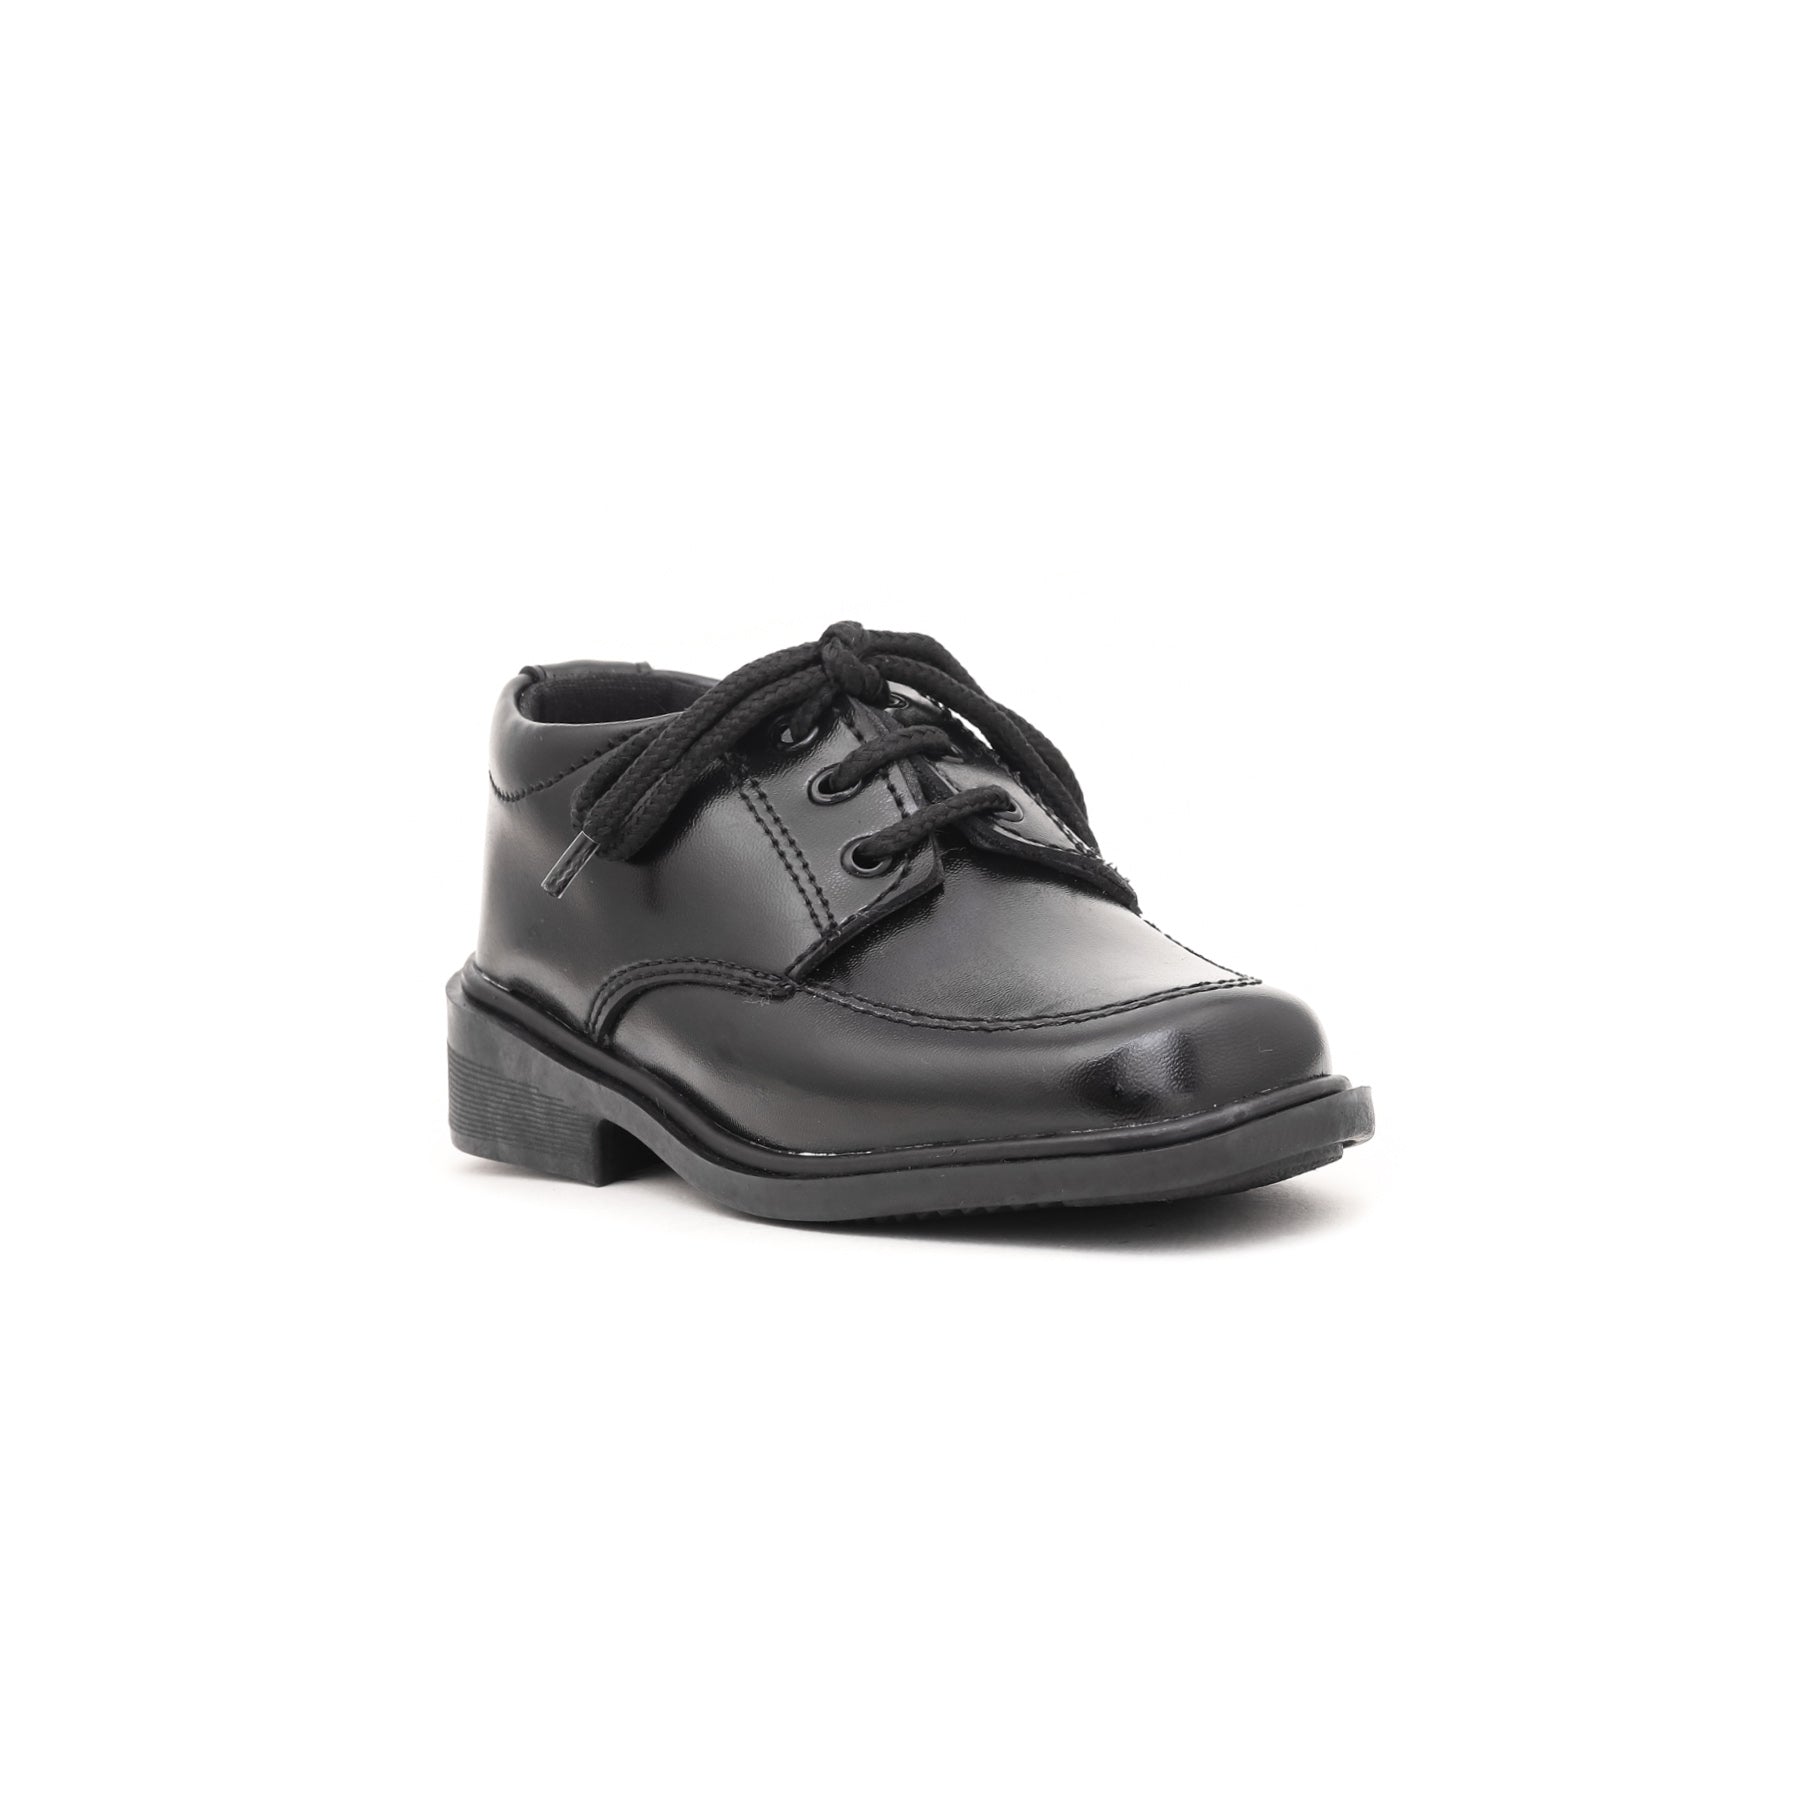 Boys Black School Shoes SK1047